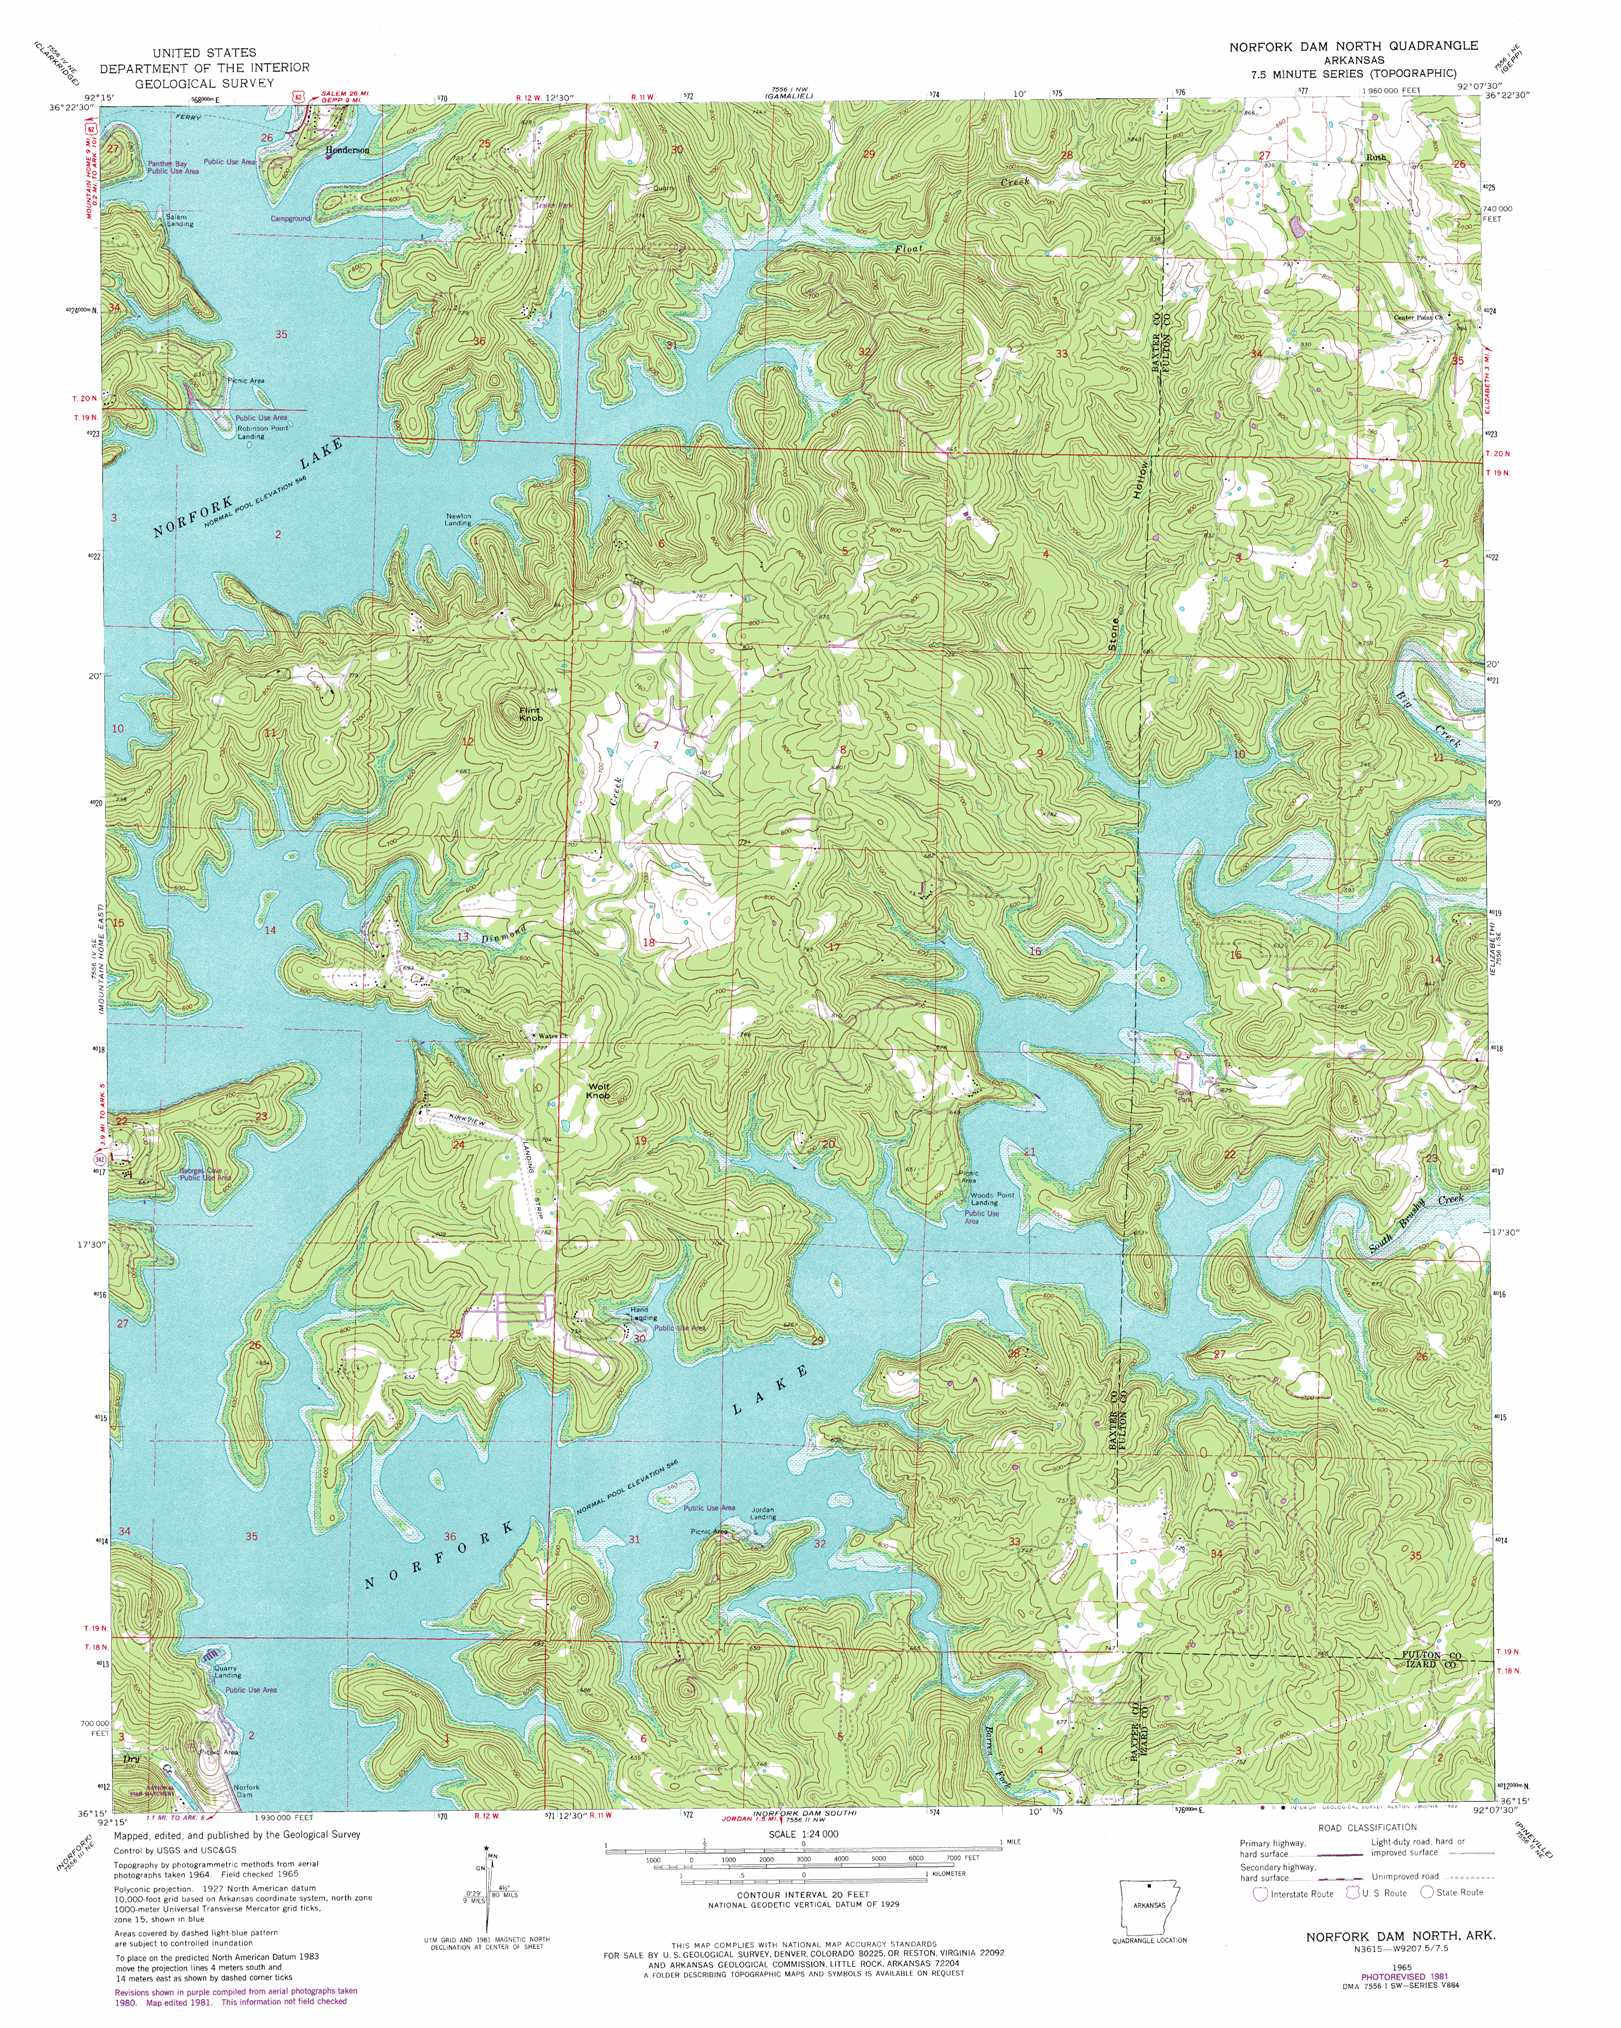 Norfork Dam North topographic map, AR - USGS Topo Quad 36092c2